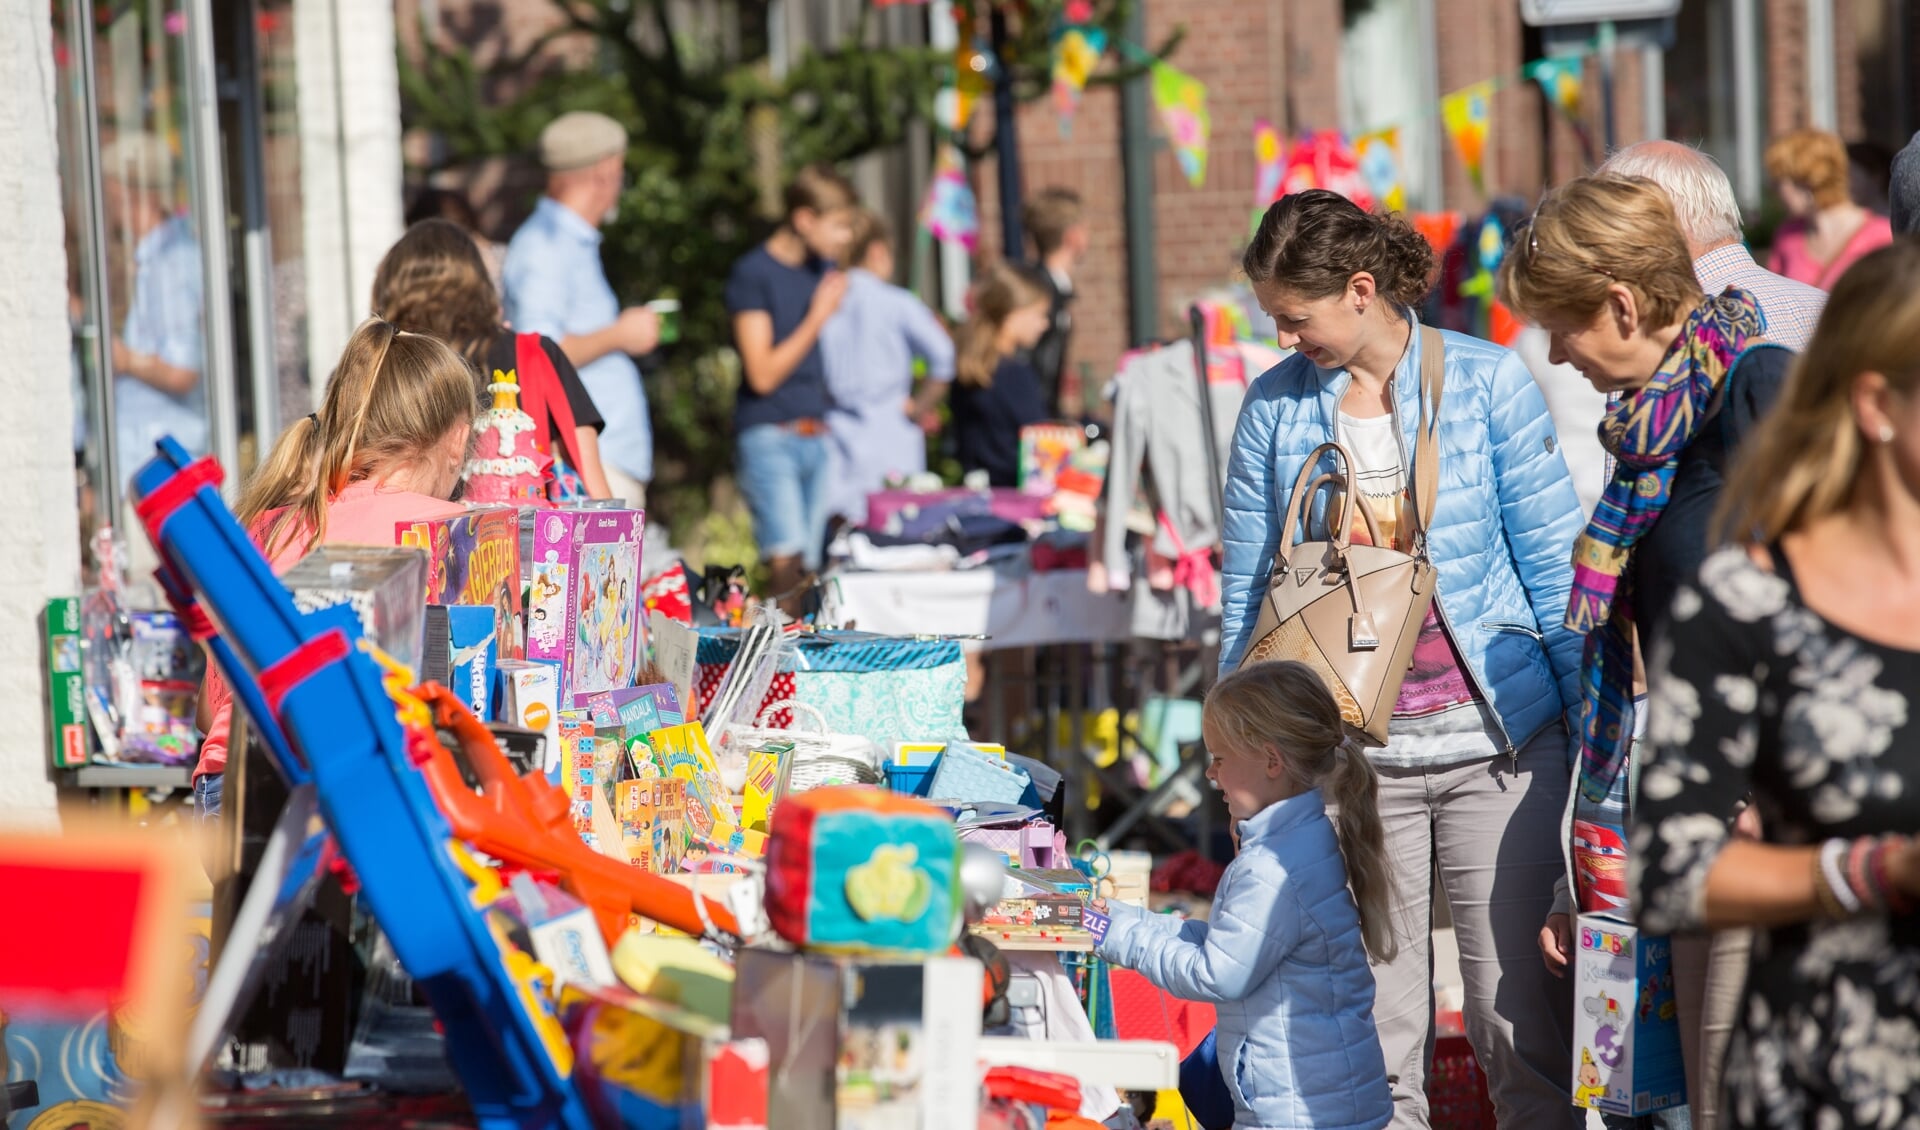 De rommelmarkt; traditiegetrouw altijd een leuk onderdeel voor jong en oud. (Foto: Wiebe Nieuwenhuis)